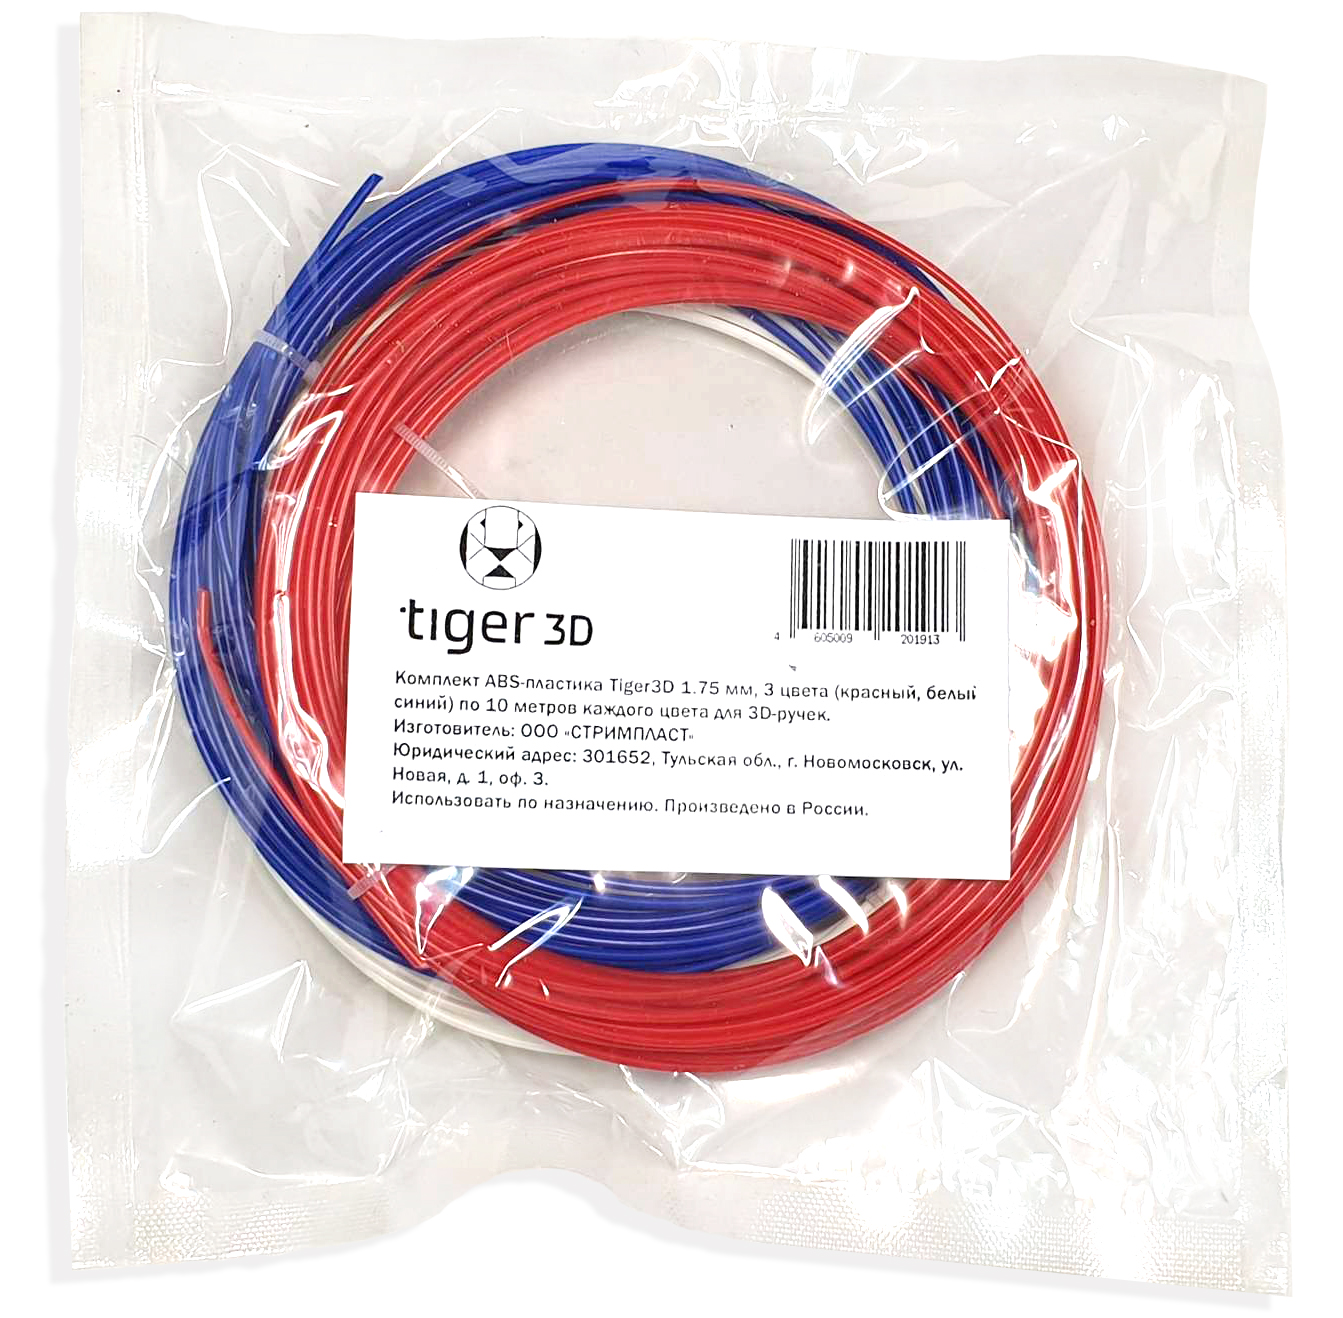 Комплект ABS-пластика Tiger3D 1.75 мм для 3D ручек (красный, белый, синий), по 10 метров каждого цвета